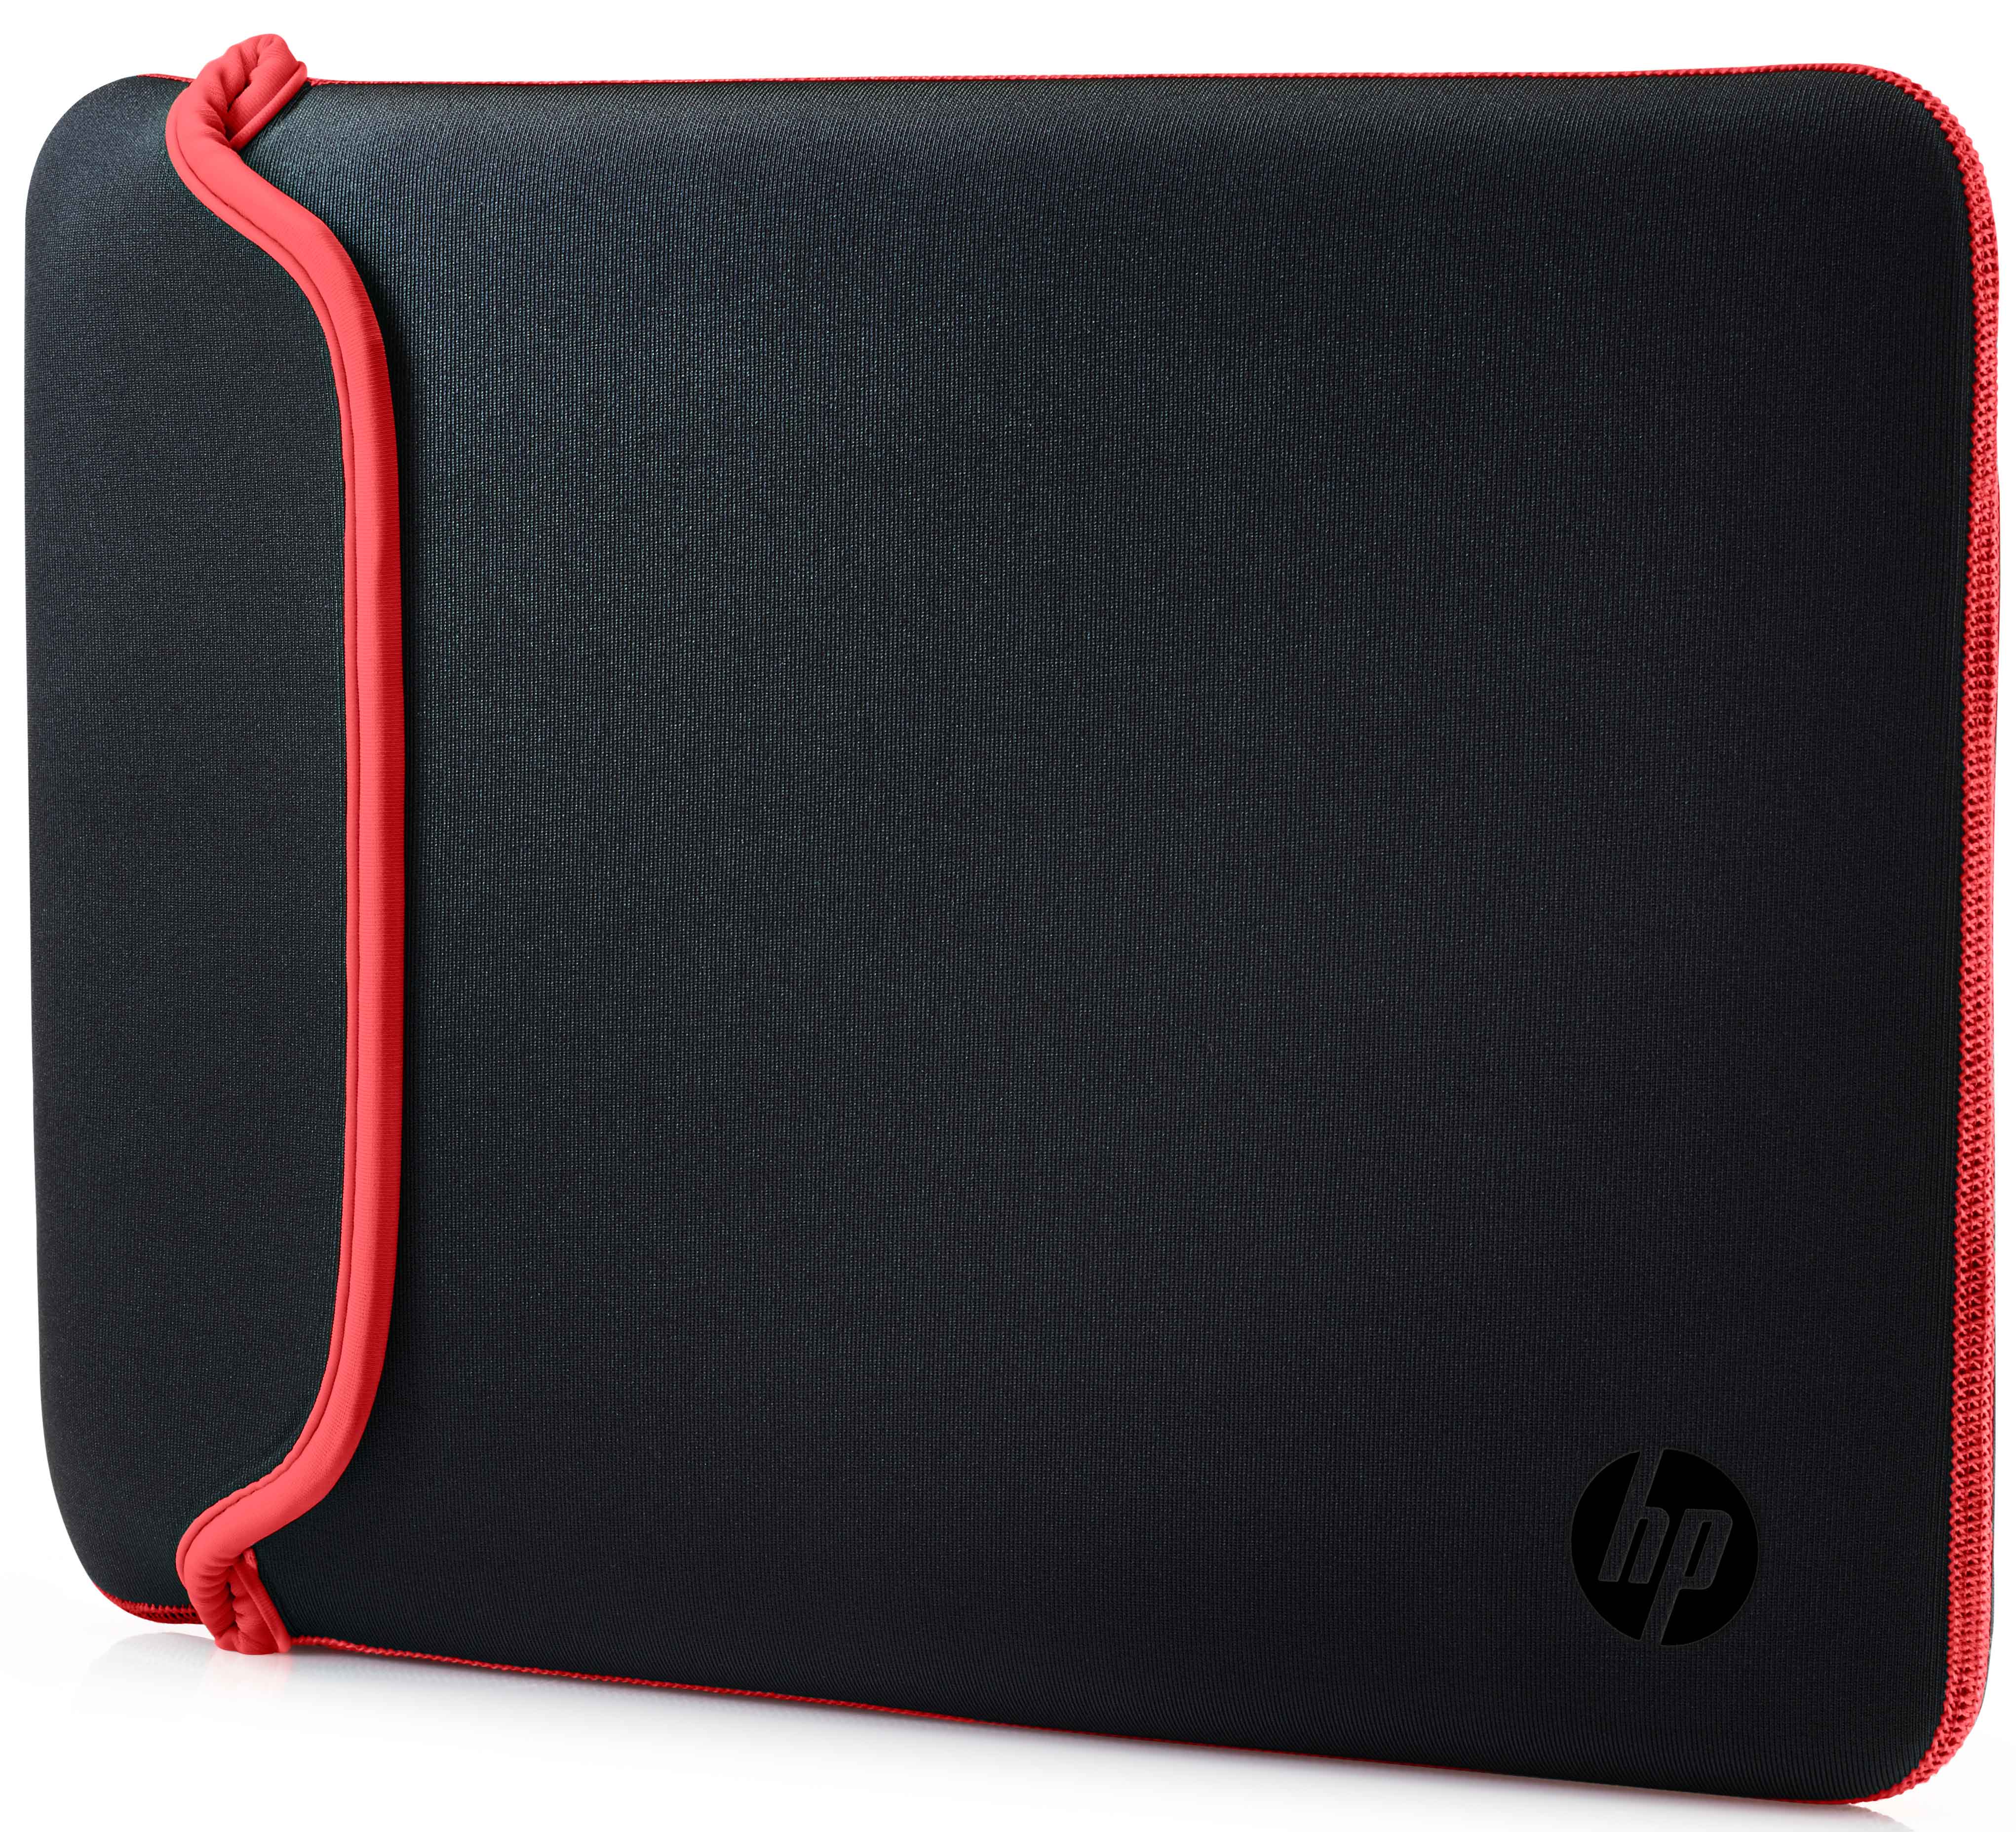 Акция на Чехол для ноутбука HP Chroma Sleeve 14" Black/Red (V5C26AA) от Rozetka UA